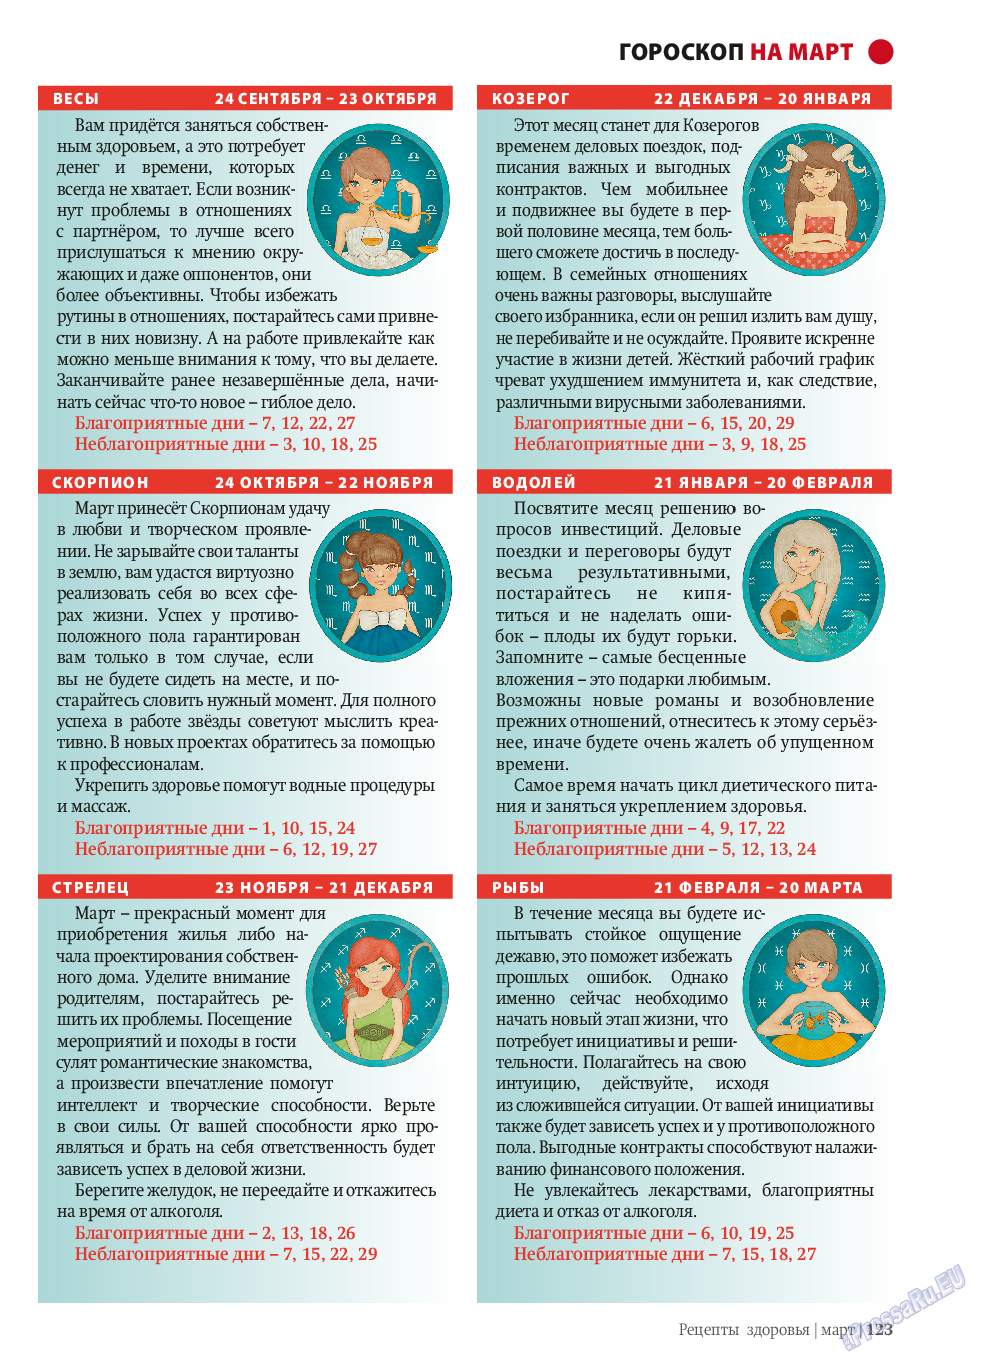 Рецепты здоровья, журнал. 2014 №58 стр.123